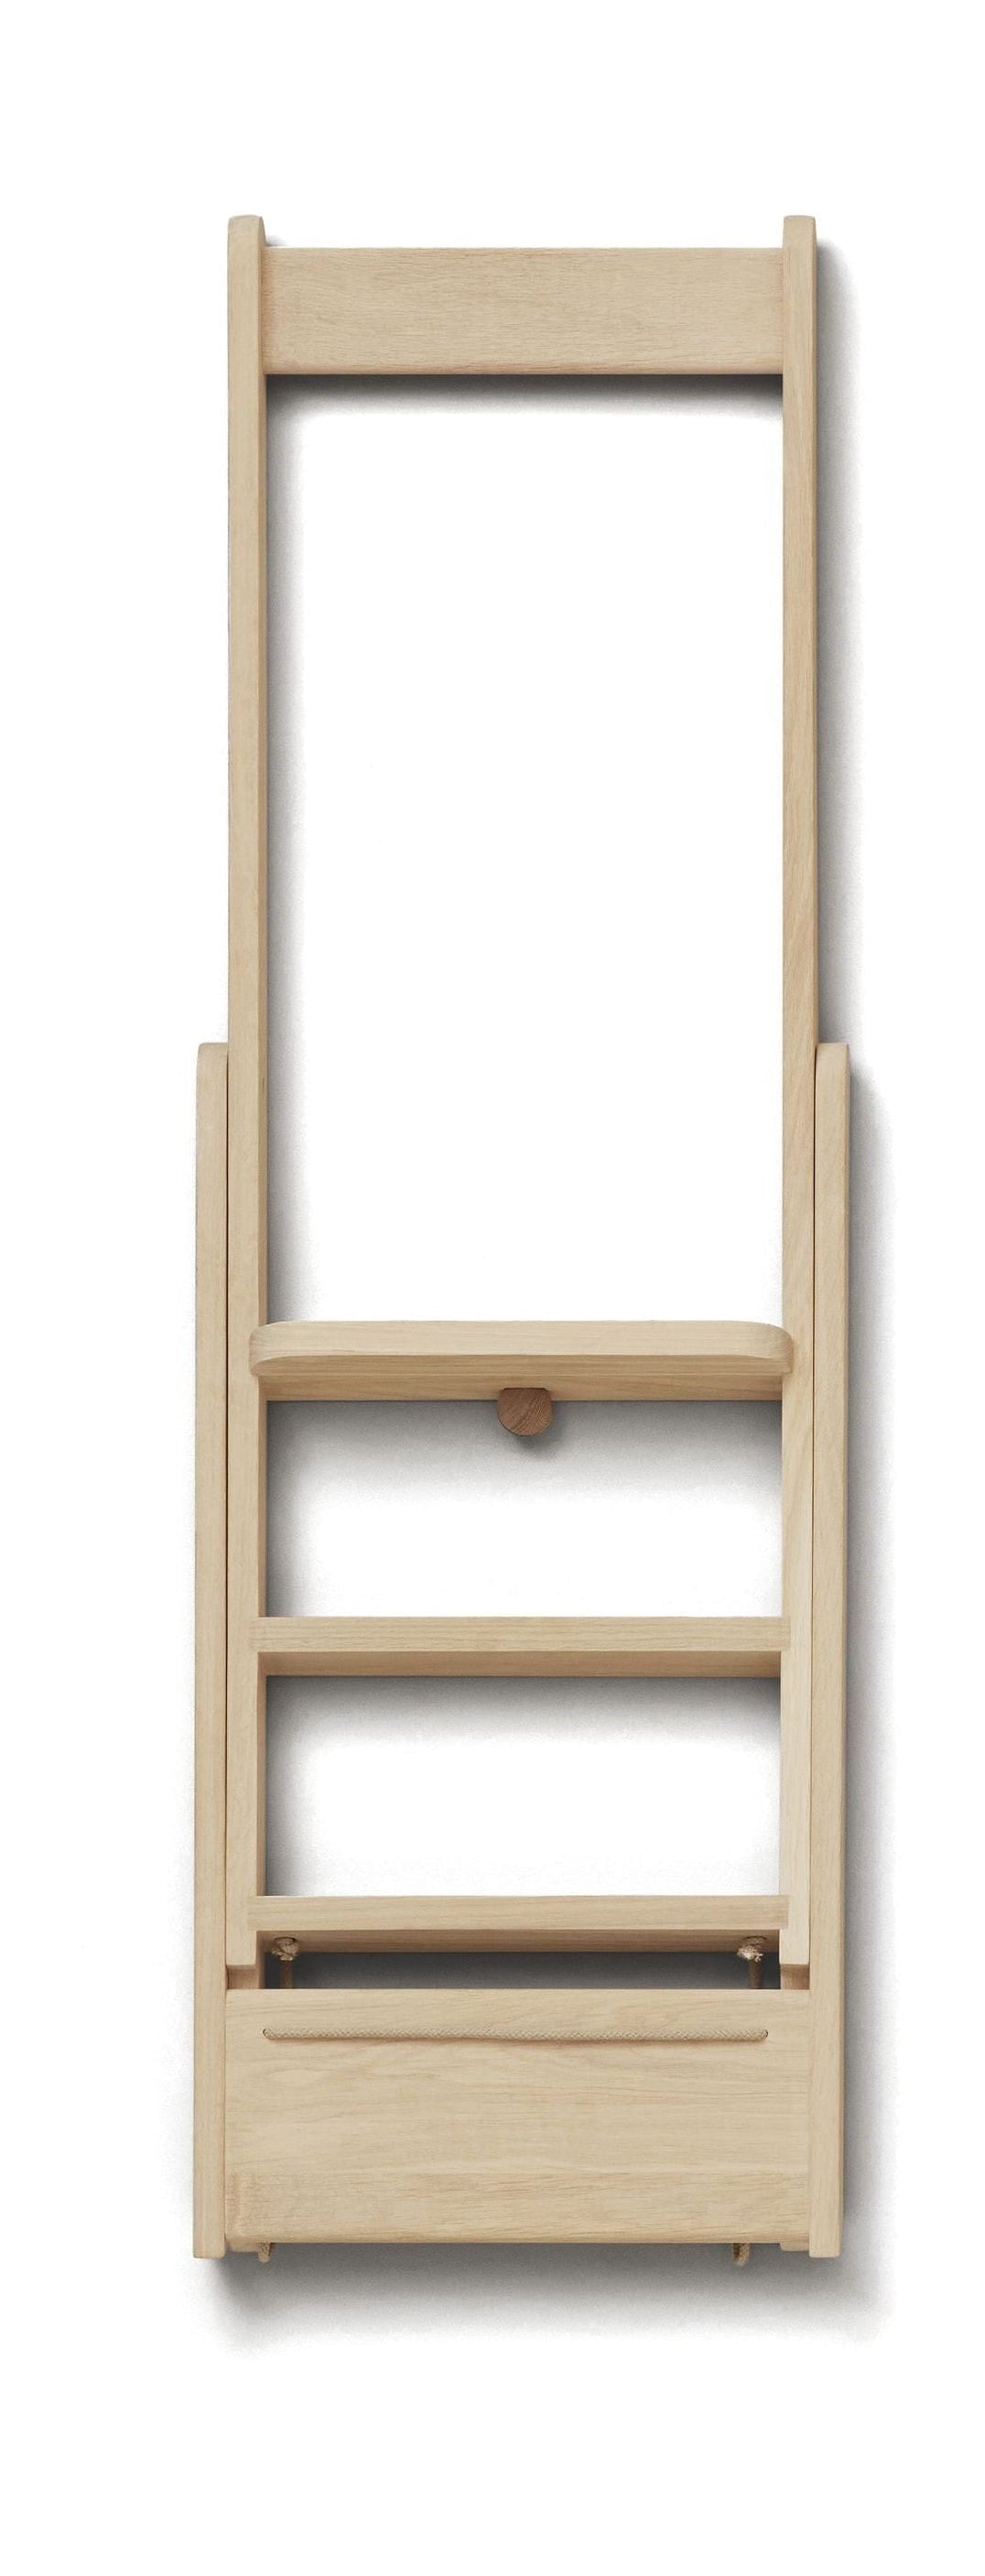 Form & Refine Stap voor stap ladder. witte eik